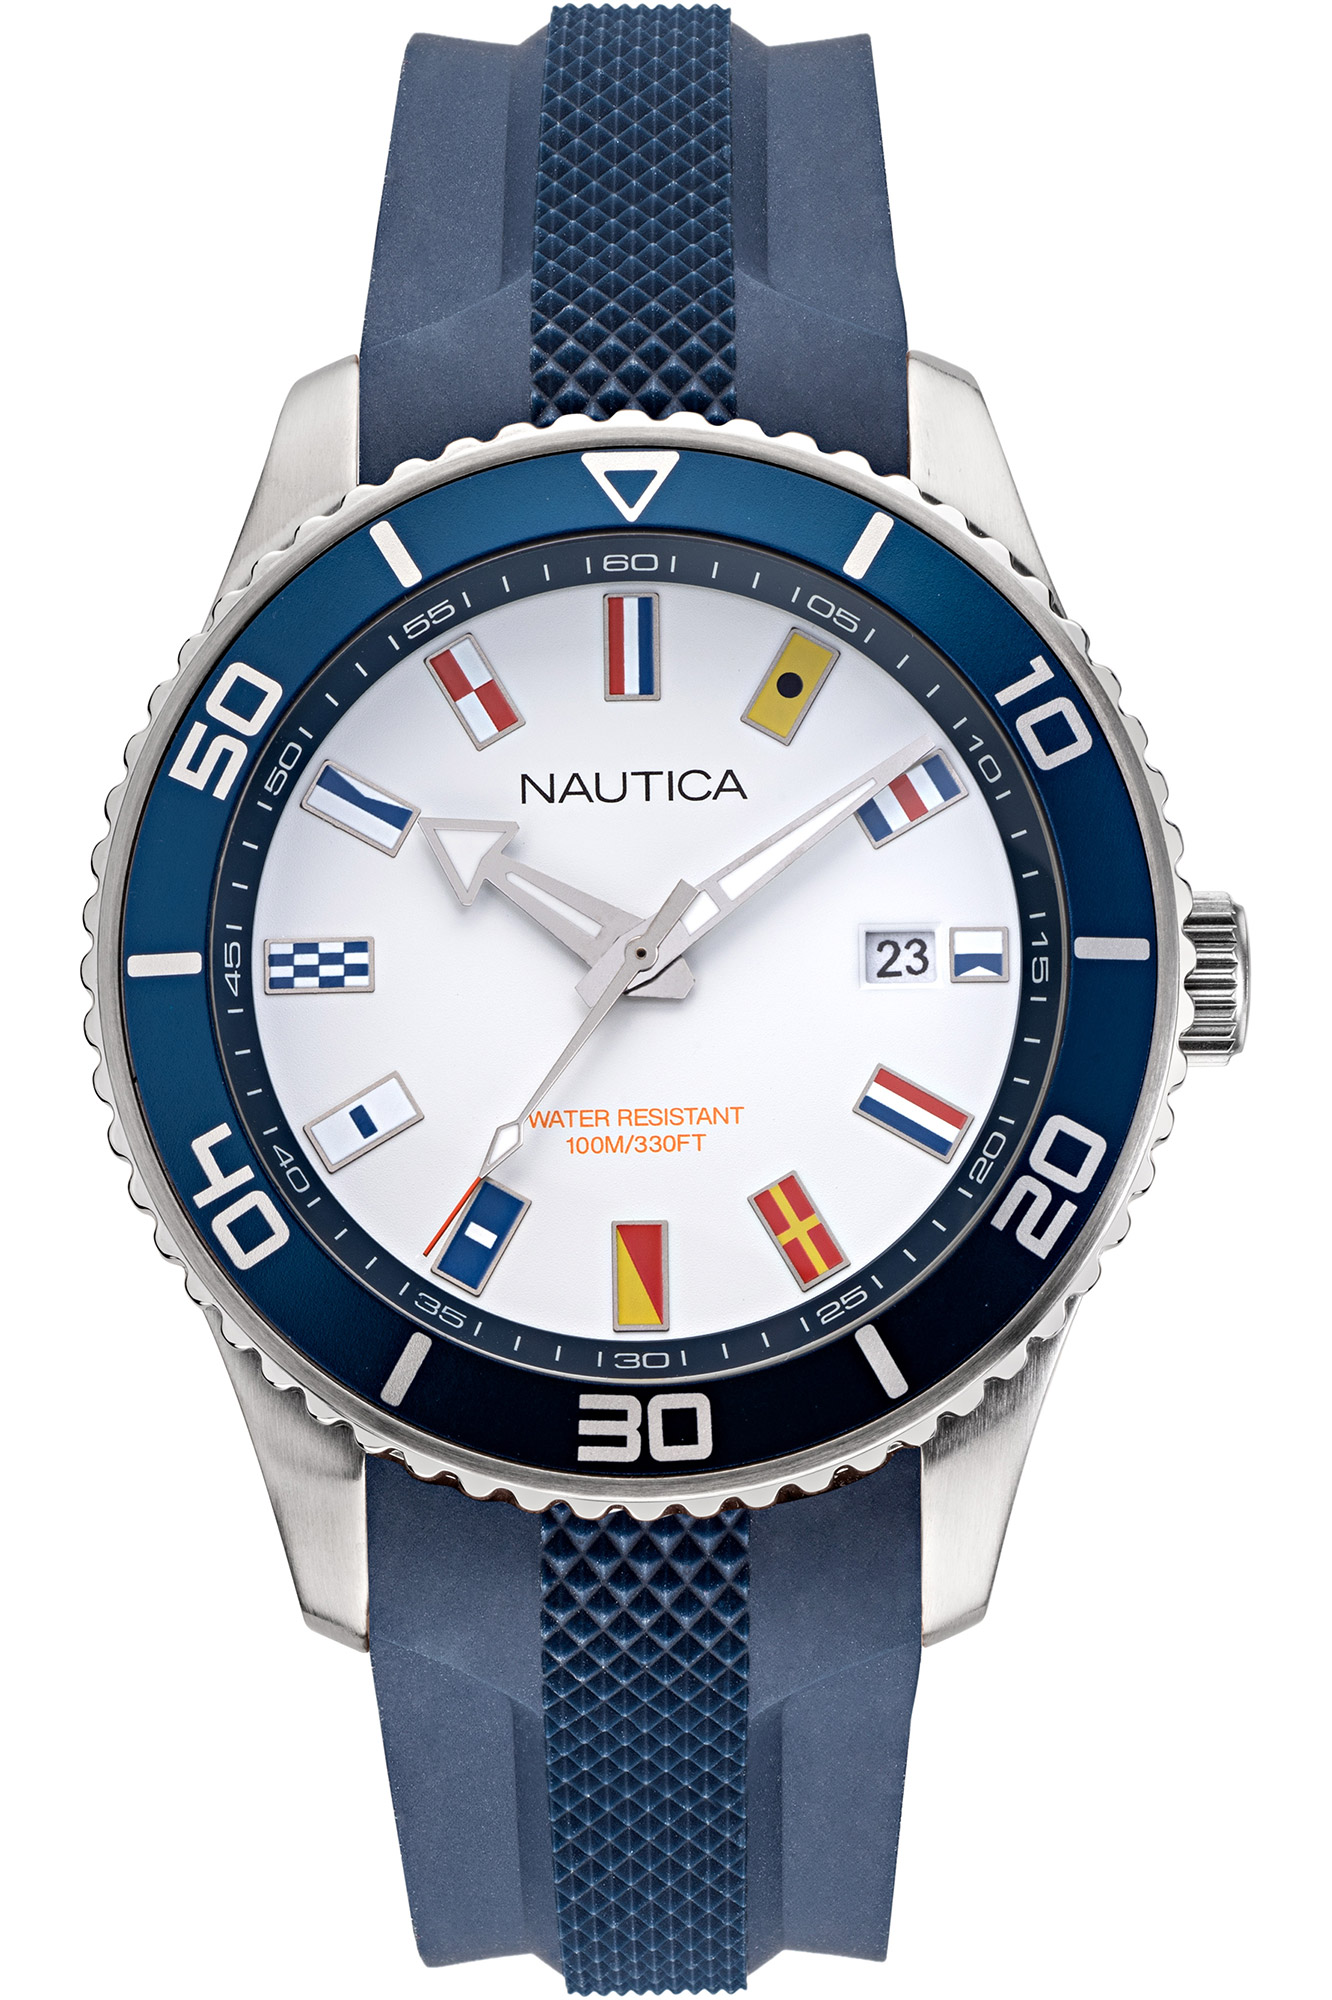 Reloj Nautica nappbf914